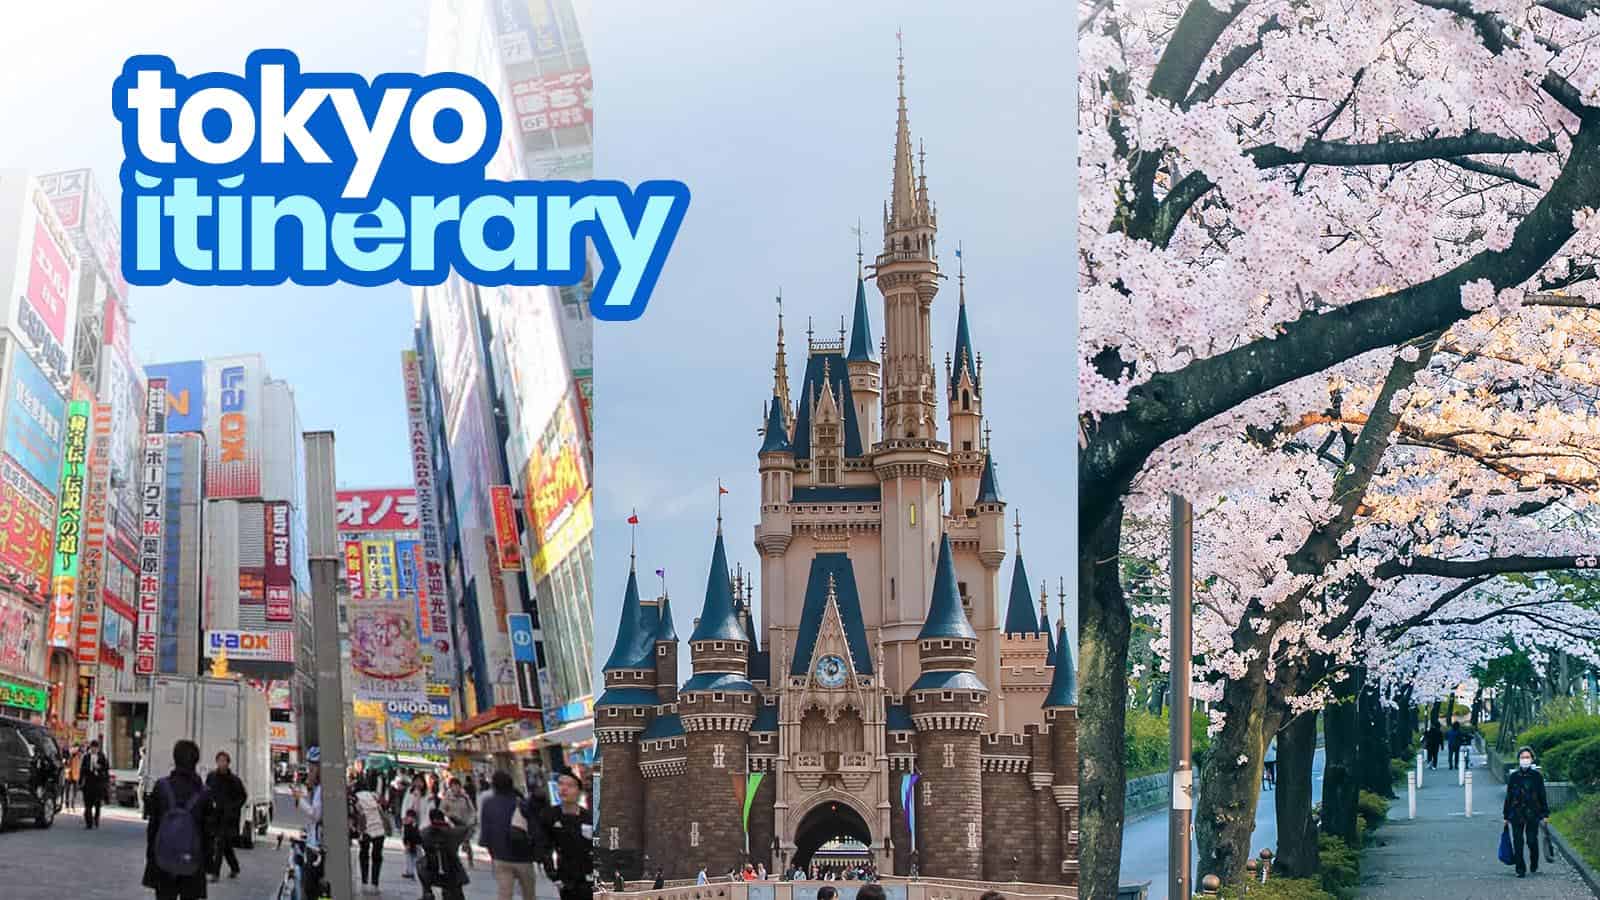 5天游览东京最佳之旅:第一次来东京的游客行程样例